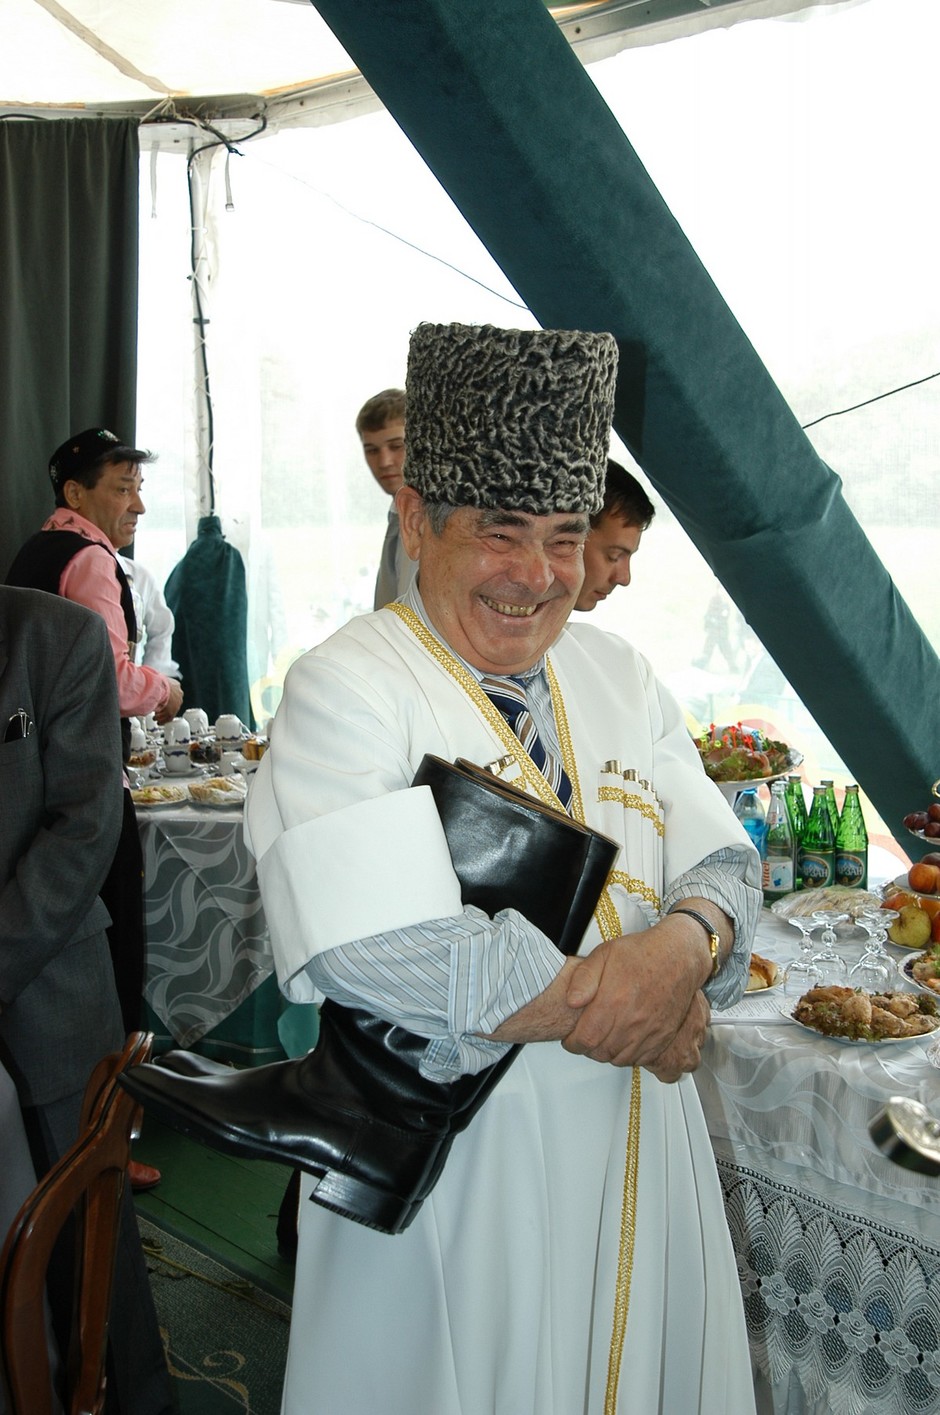 Sabantuy in Kazan, 2005